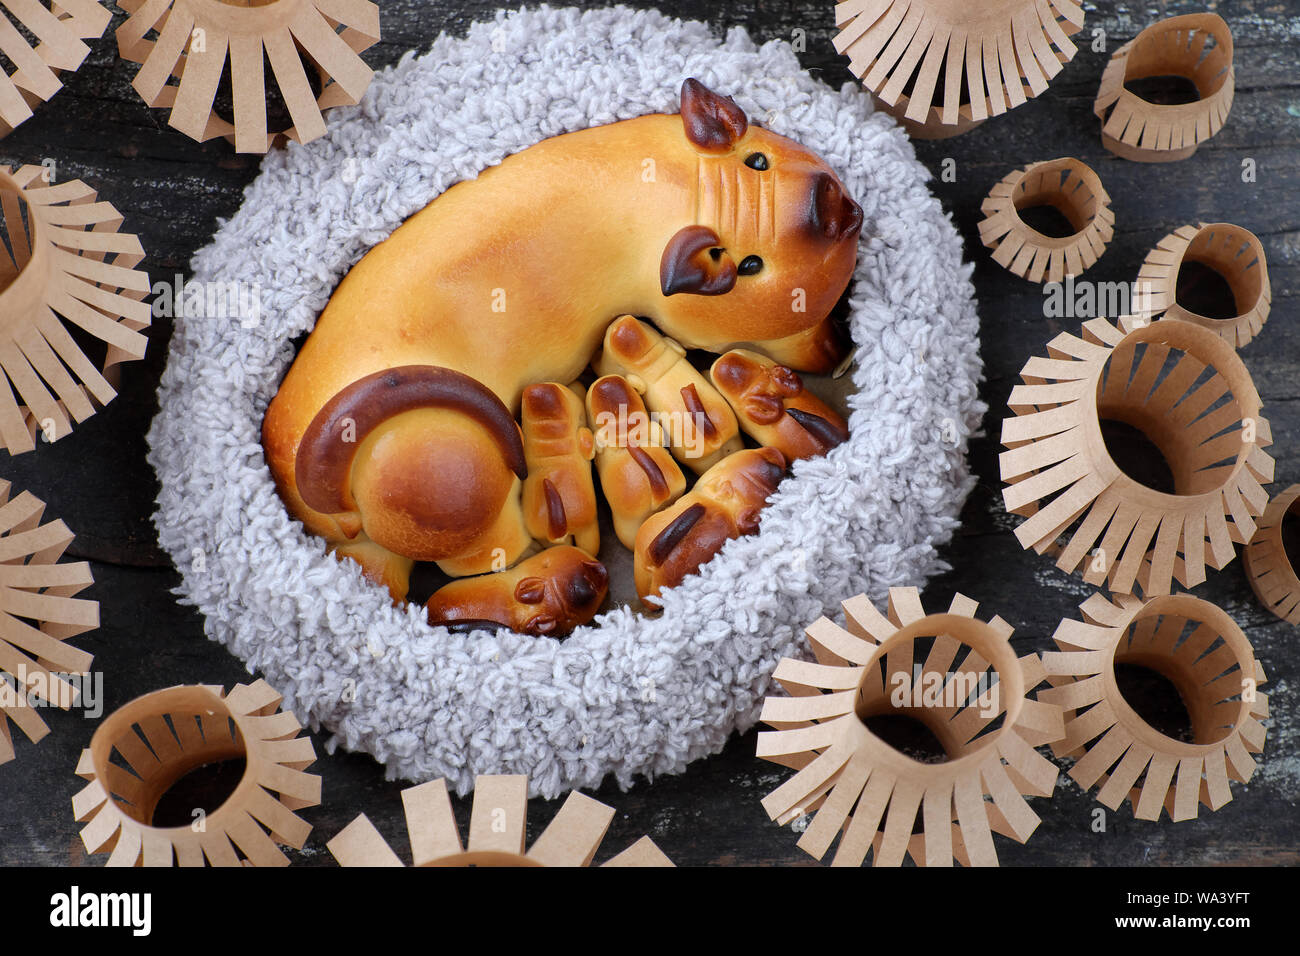 Close up en vue de dessus du gâteau de lune avec la mère de porcs et porcelets forme, lanternes en papier, articles de boulangerie traditionnelle pour la mi saison d'automne sur un parquet en bois noir Banque D'Images